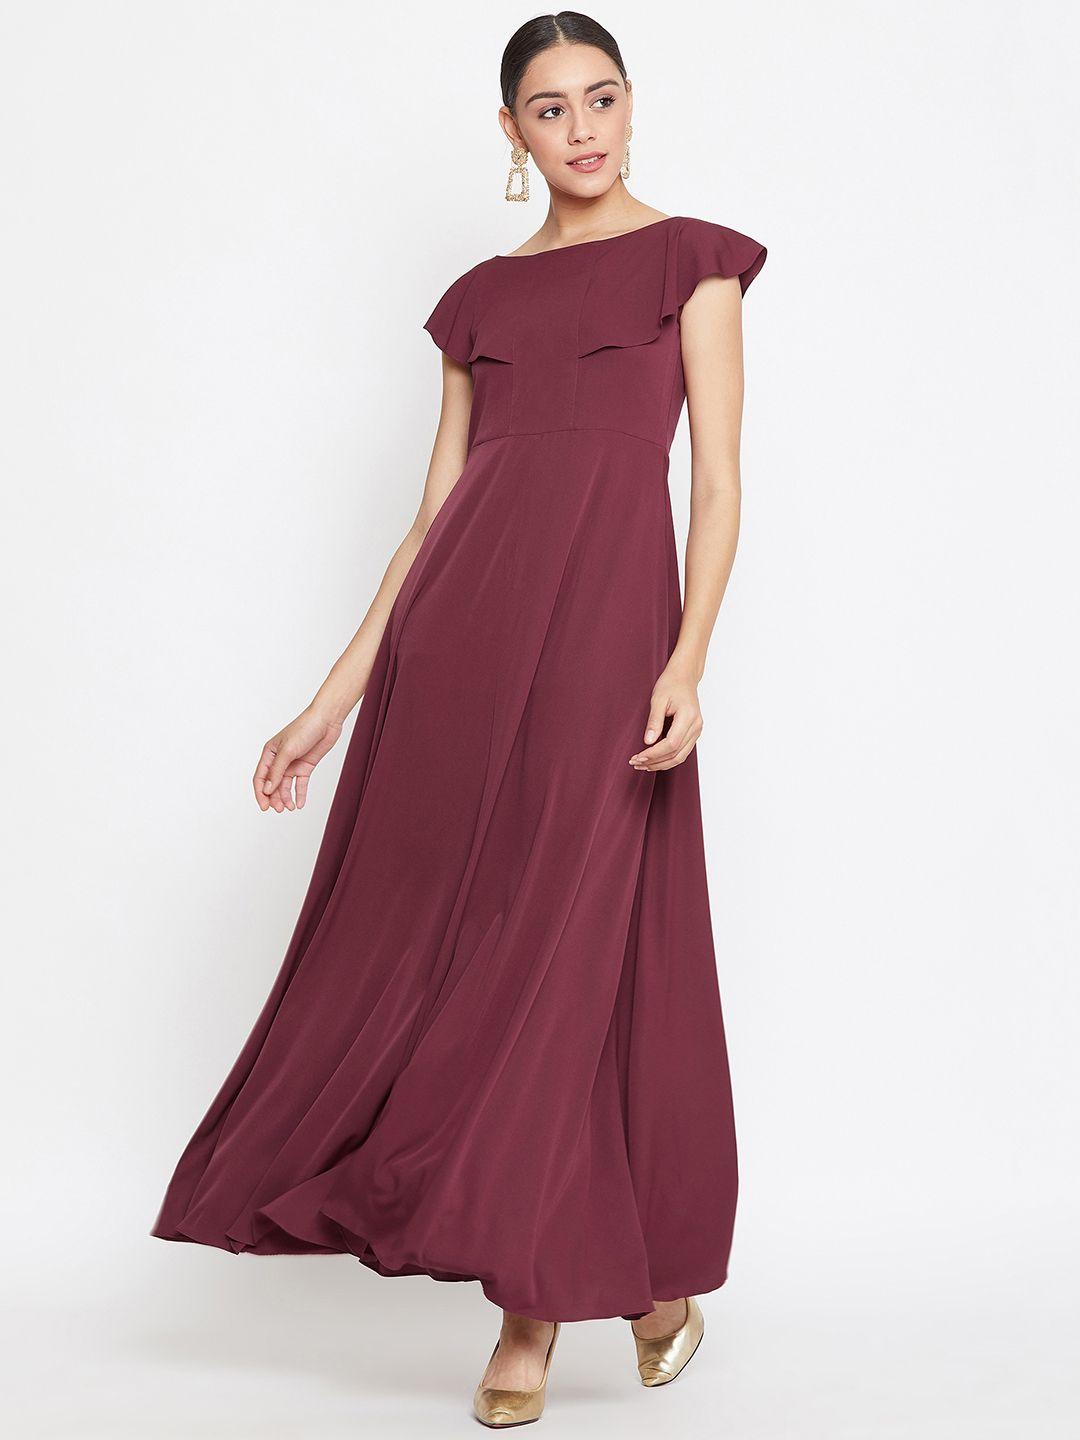 uptownie-lite-women-maroon-solid-maxi-dress